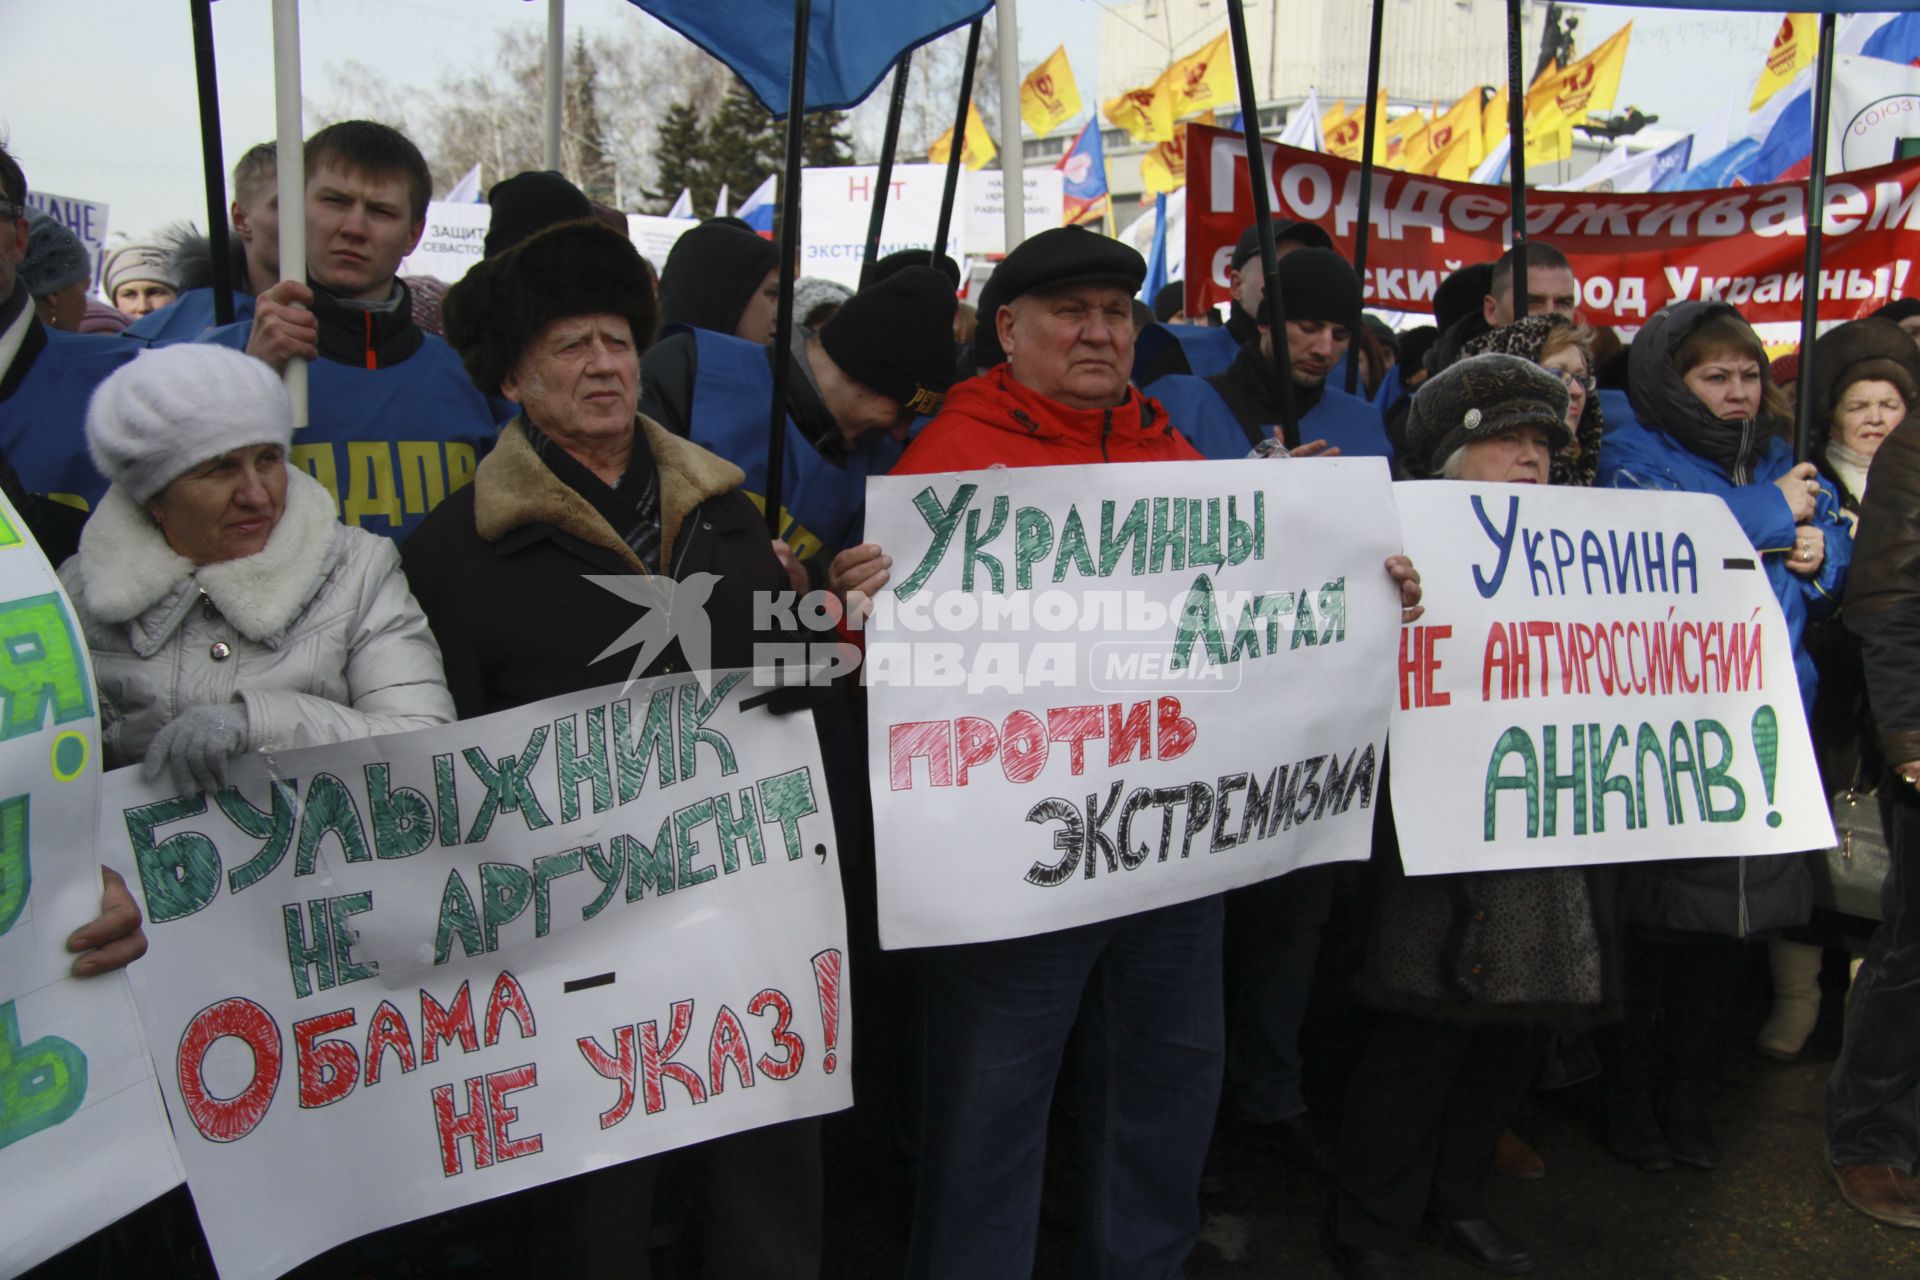 Митинг в поддержку поддержка Крыма в Барнауле. На снимке: митингующий с плакатом: `Украинцы Алтая против экстремизма`.